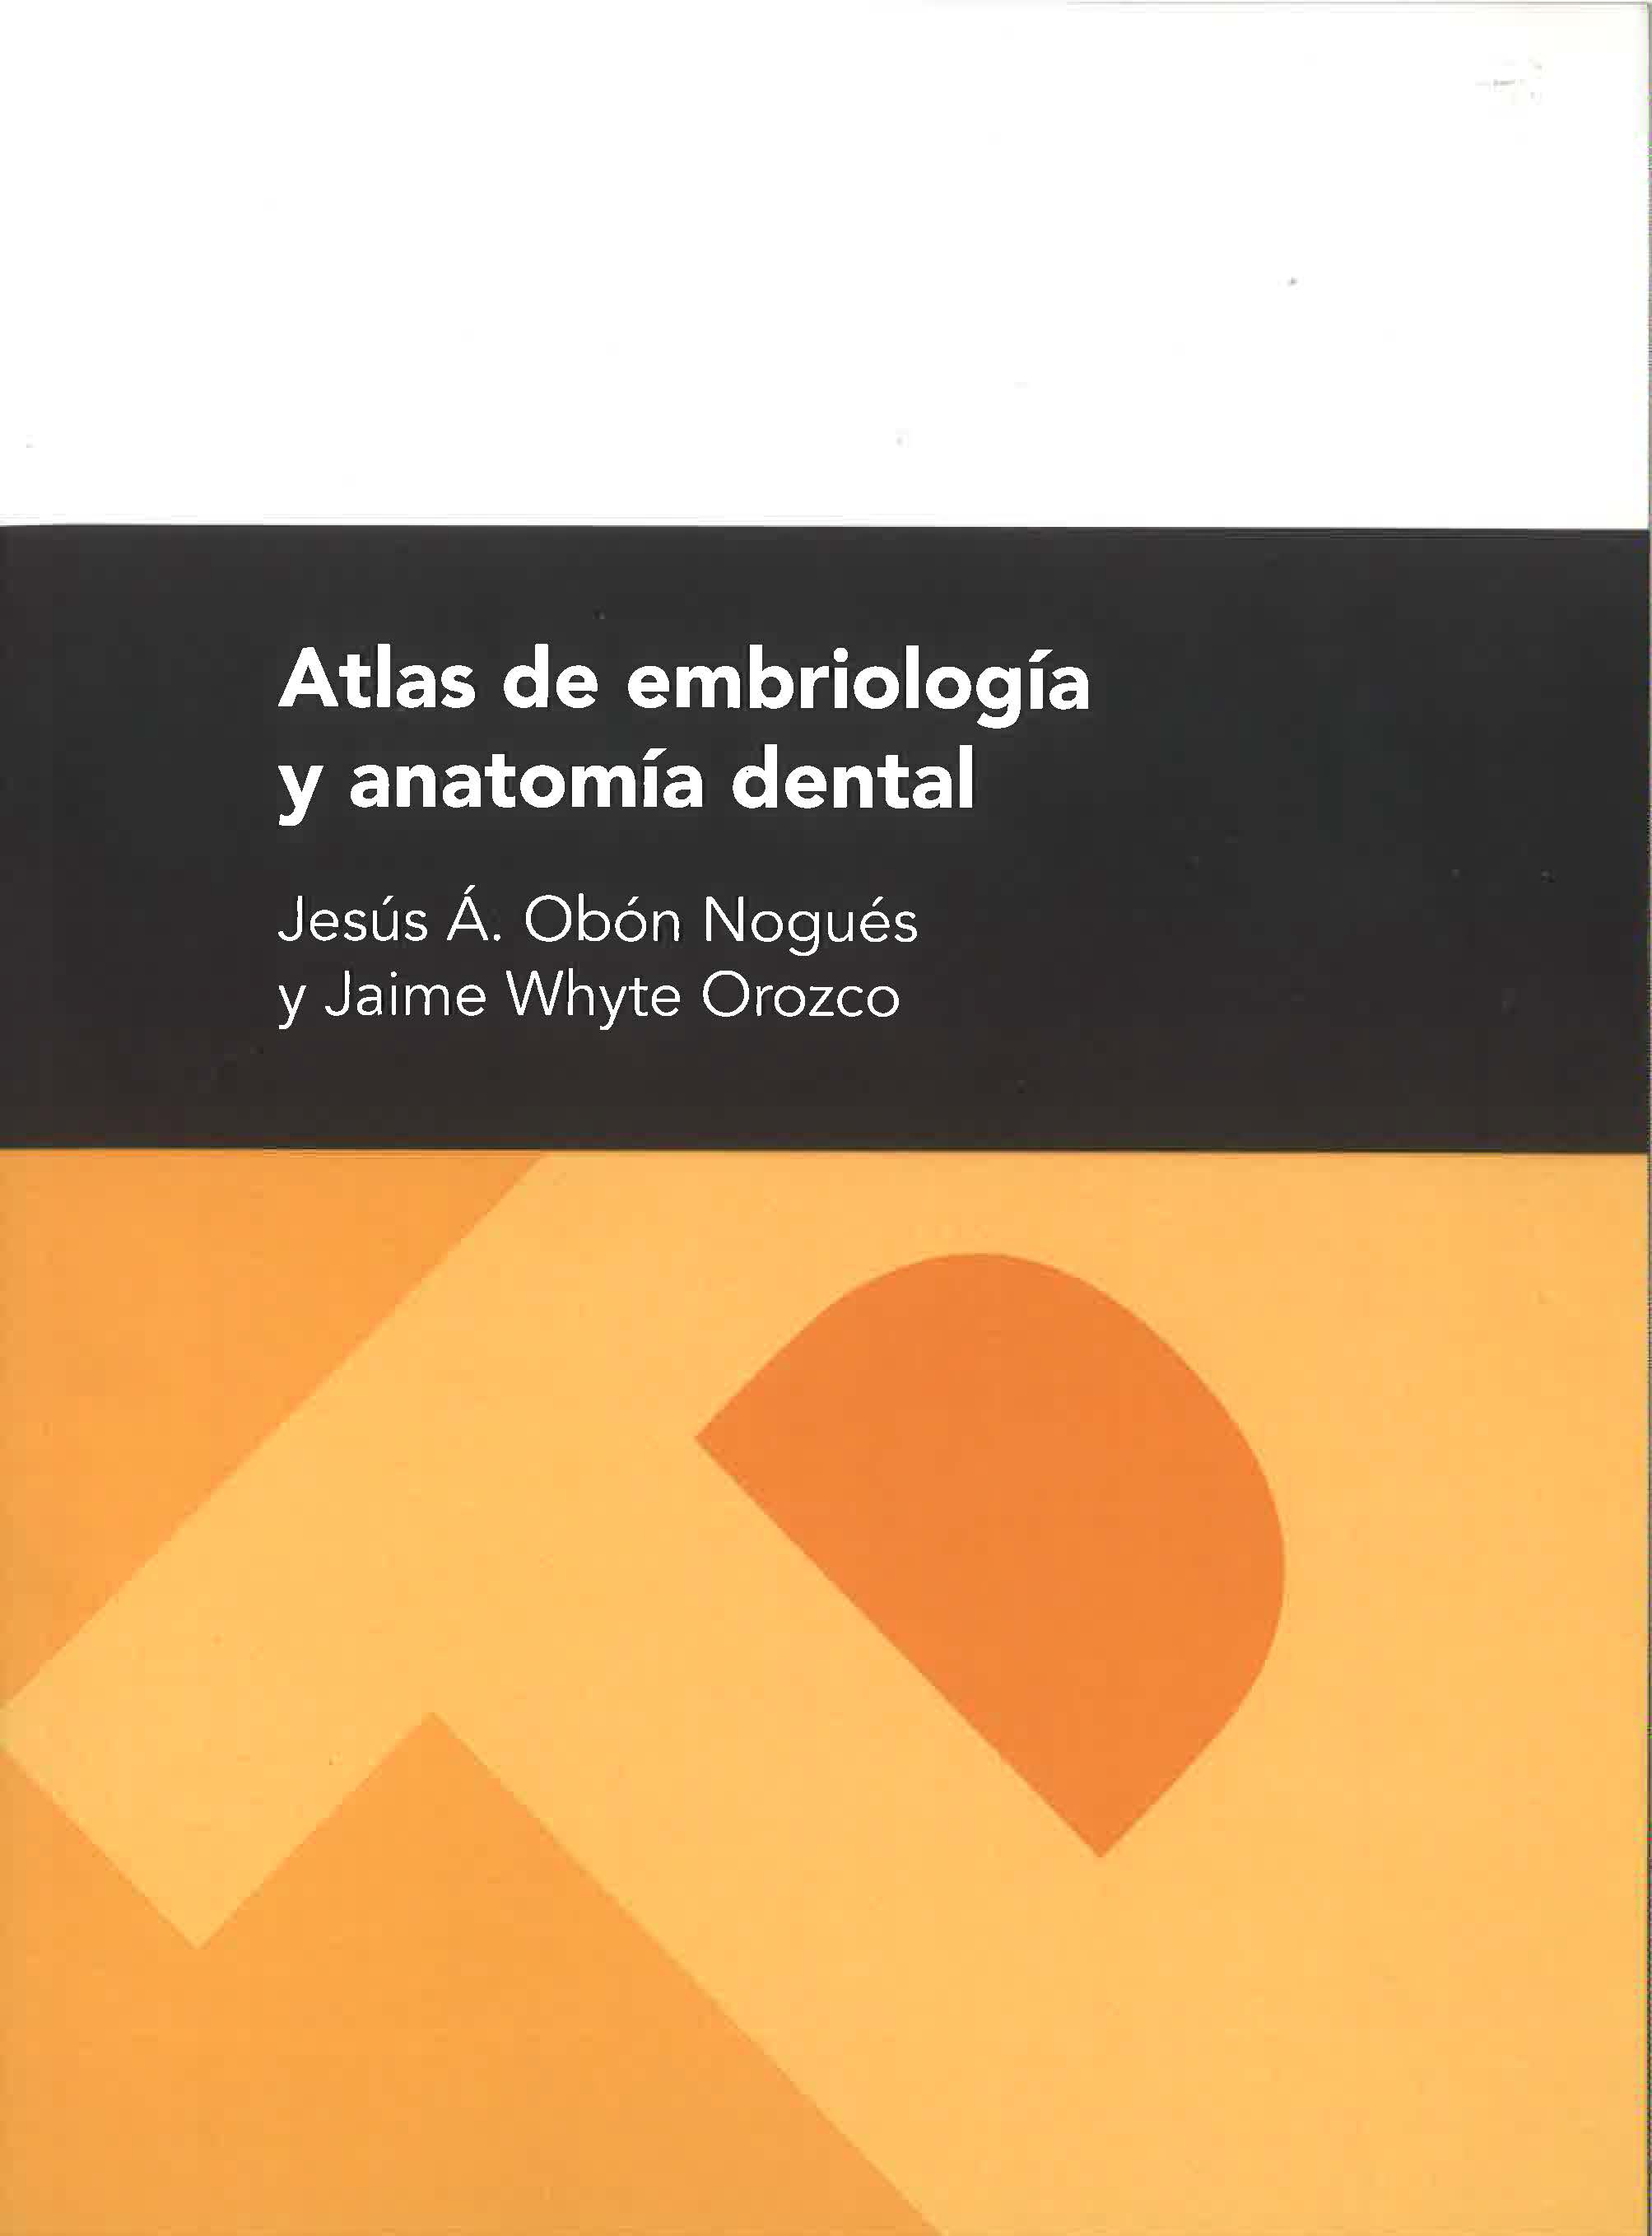 Atlas de emriología y anatomía dental